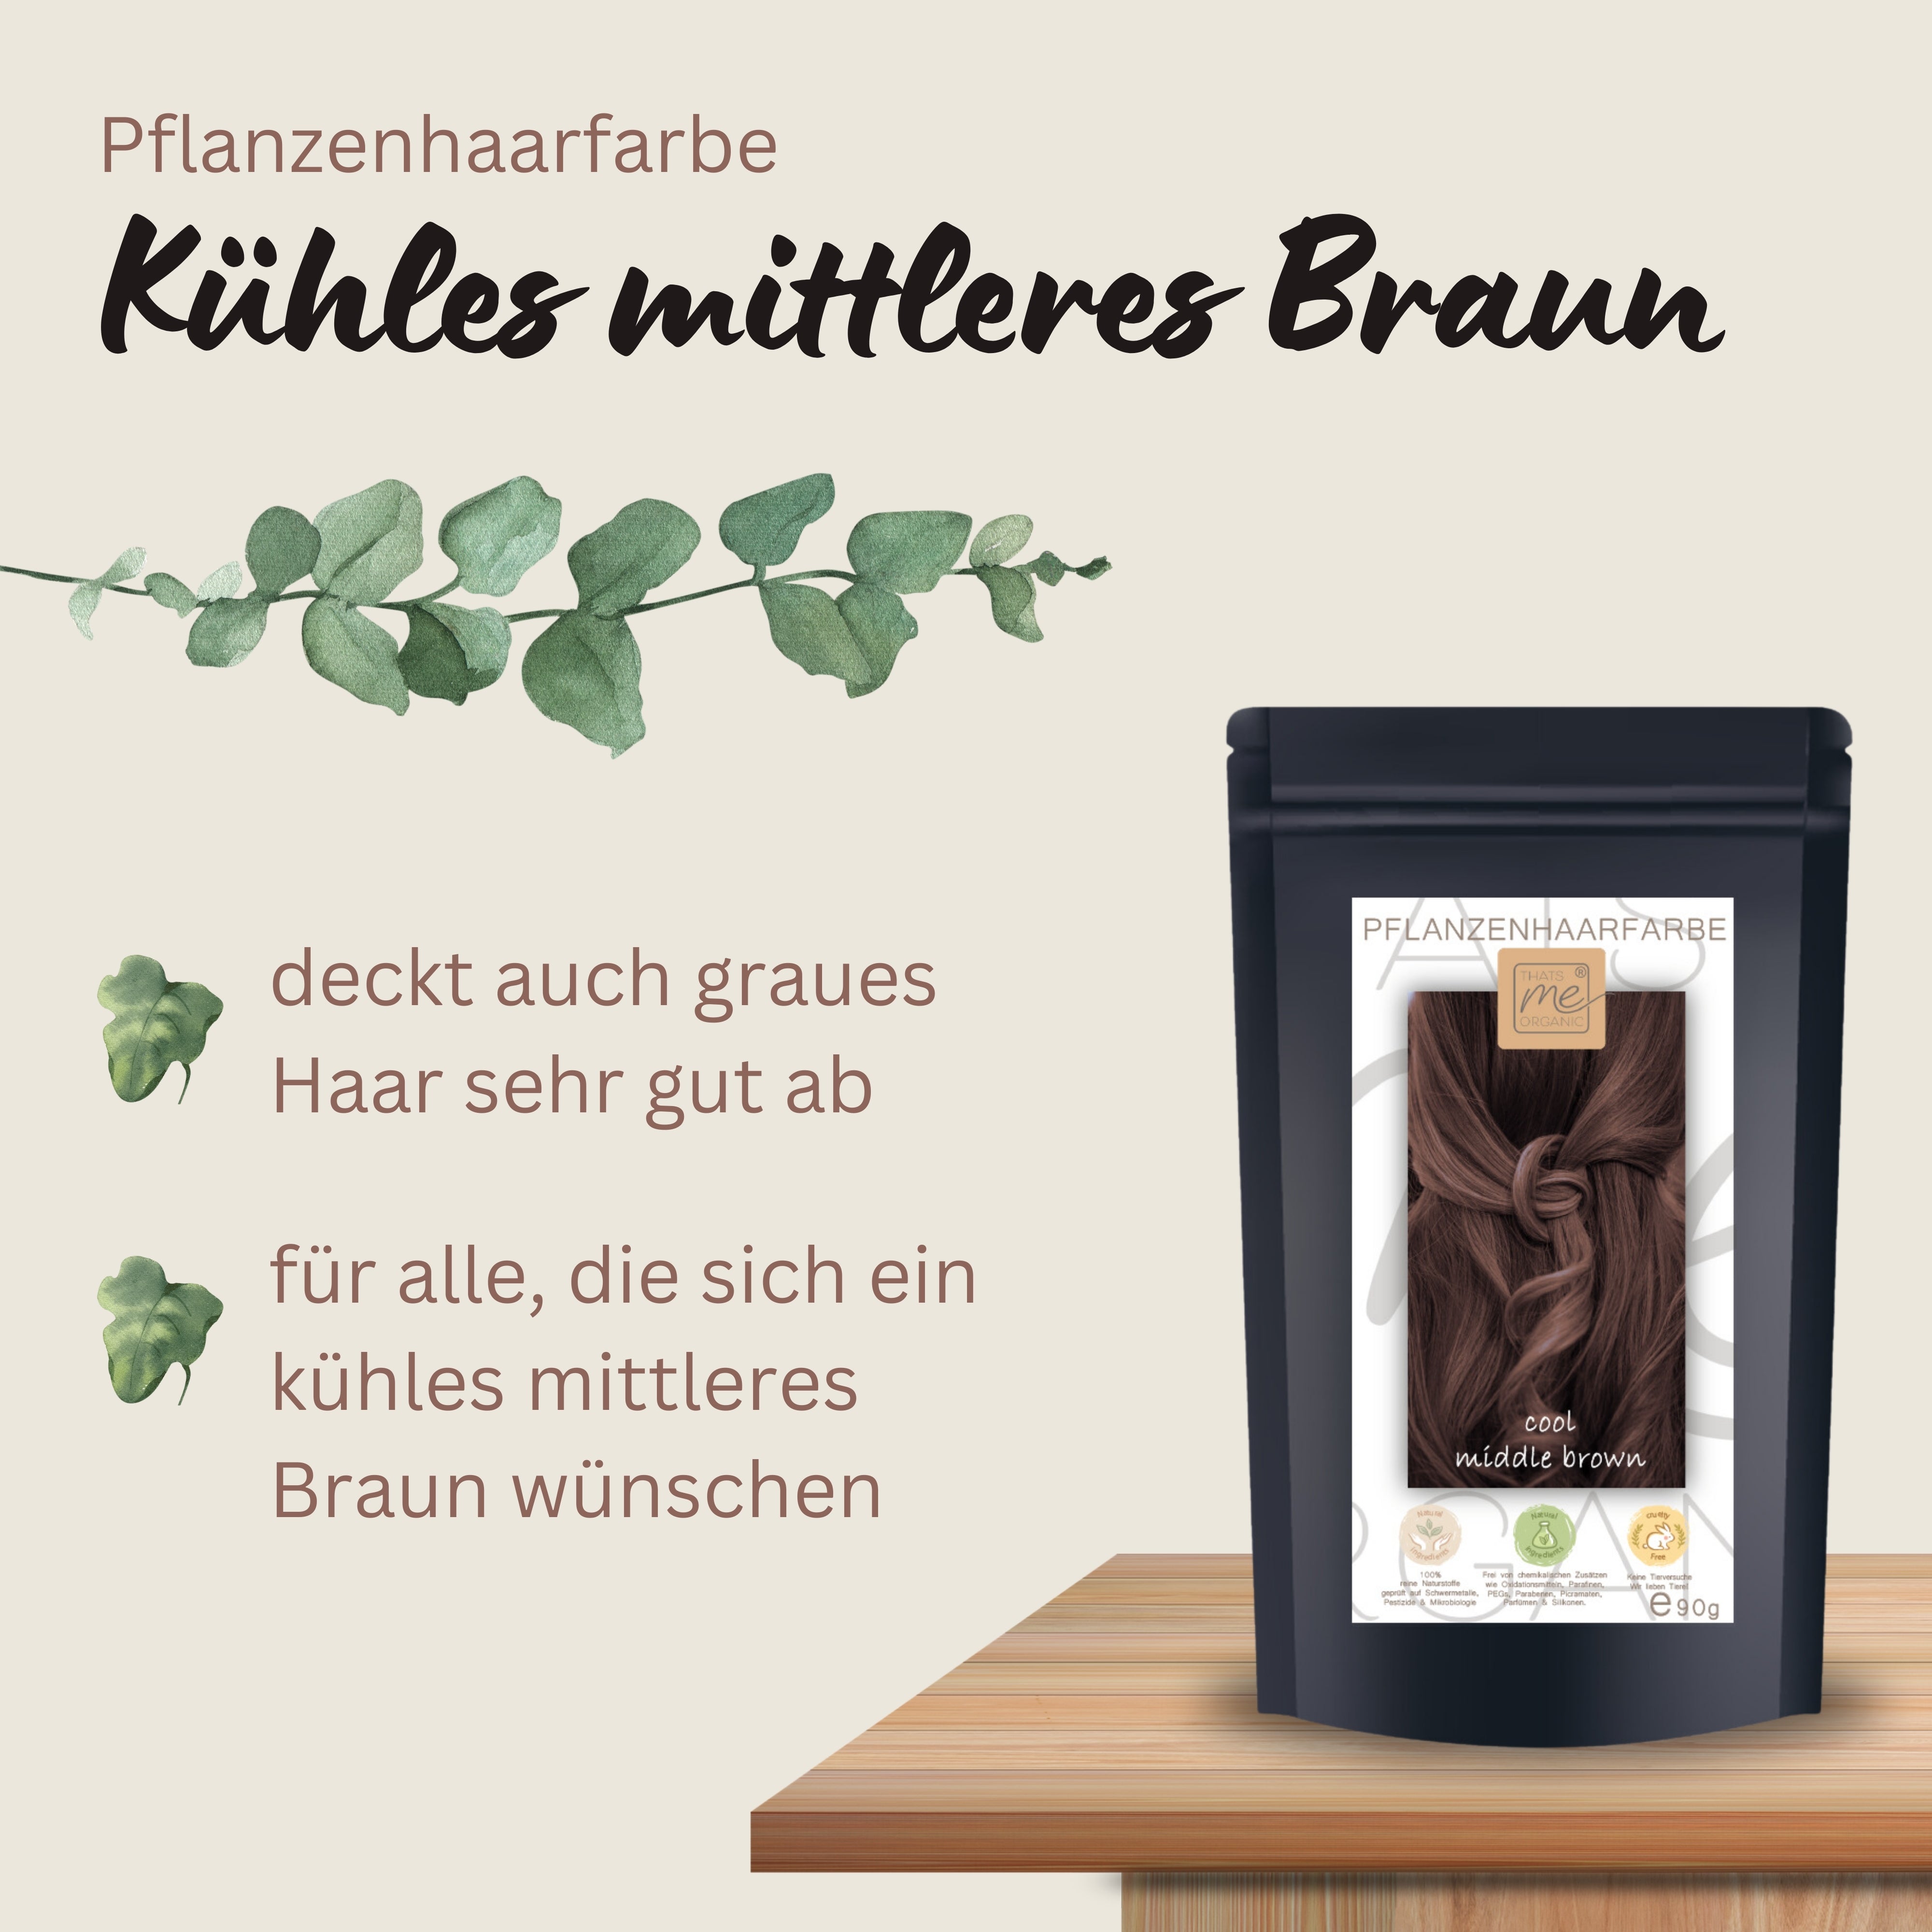 Profi-Pflanzenhaarfarbe "Kühles mittleres braun - cool middle brown" 90g Nachfüllpack